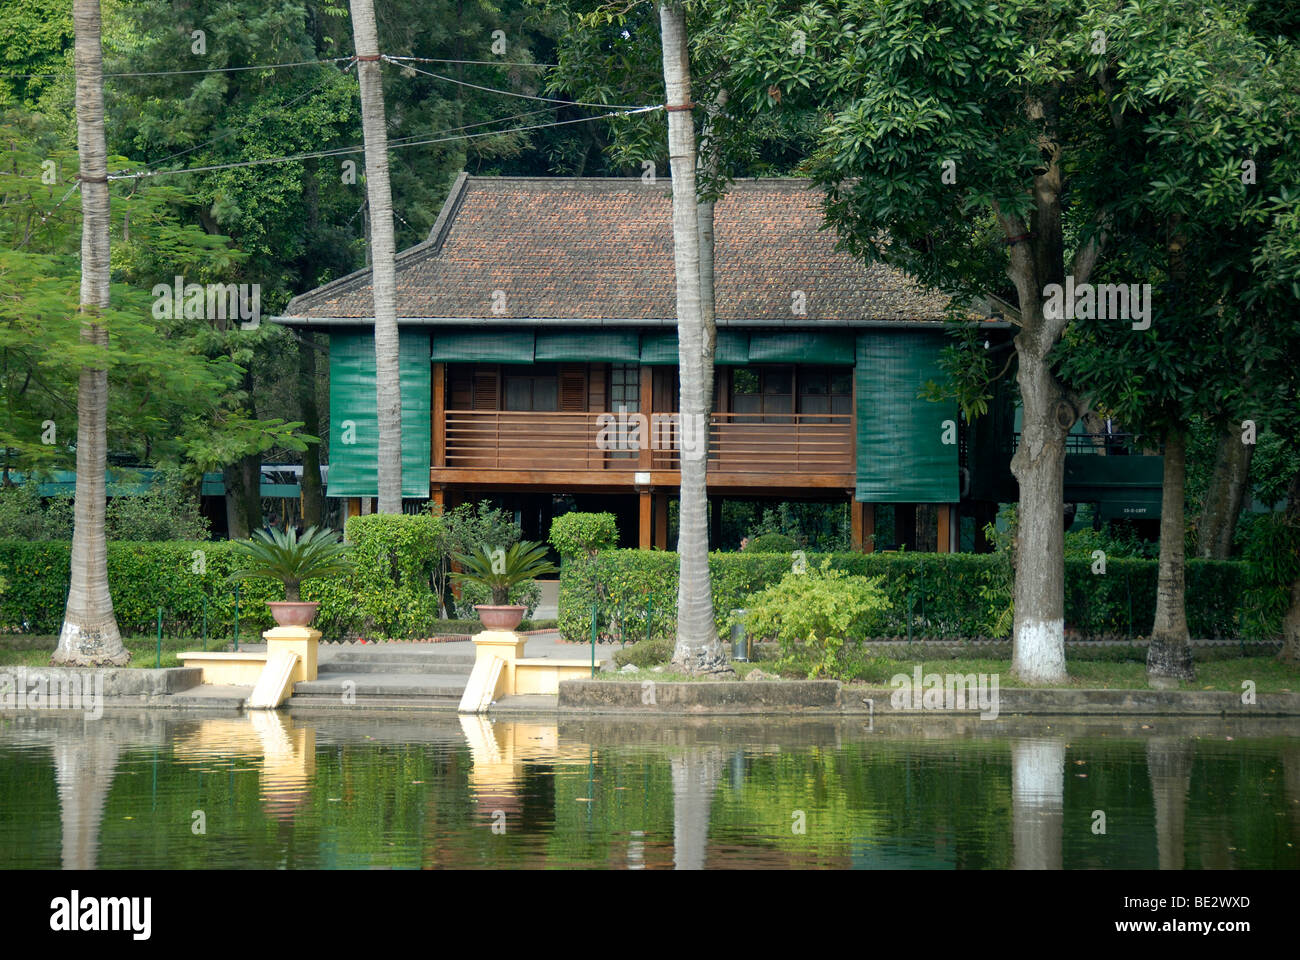 Maison en bois sur pilotis, Ho Chi Minh Lake House, Hanoi, Vietnam, Asie du Sud, Asie Banque D'Images